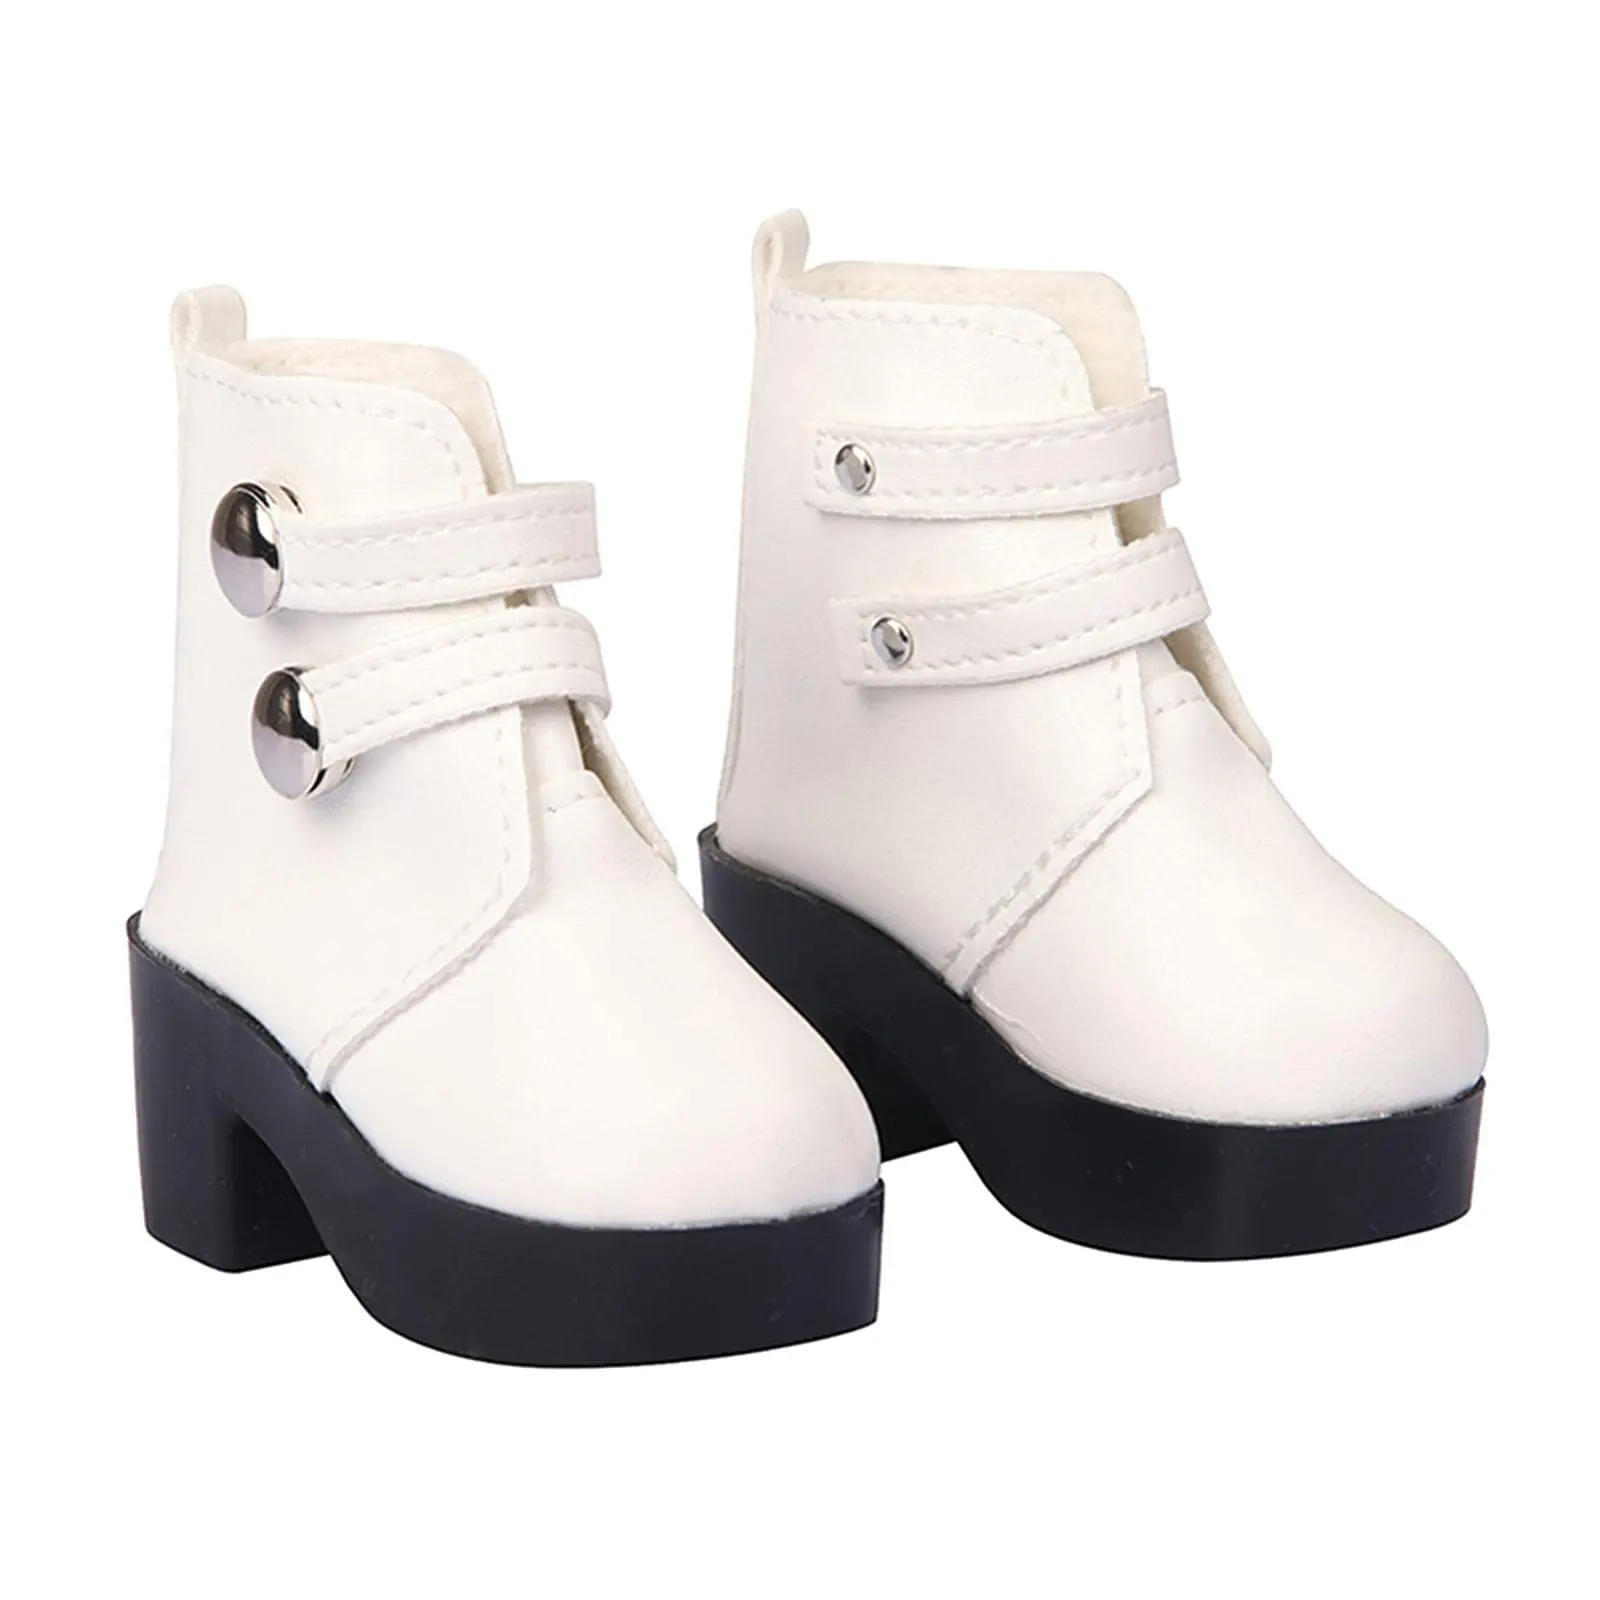 Мода 18 дюймов куклы ботинки на Плоском Каблуке обувь классические игрушки аксессуары американская девочка